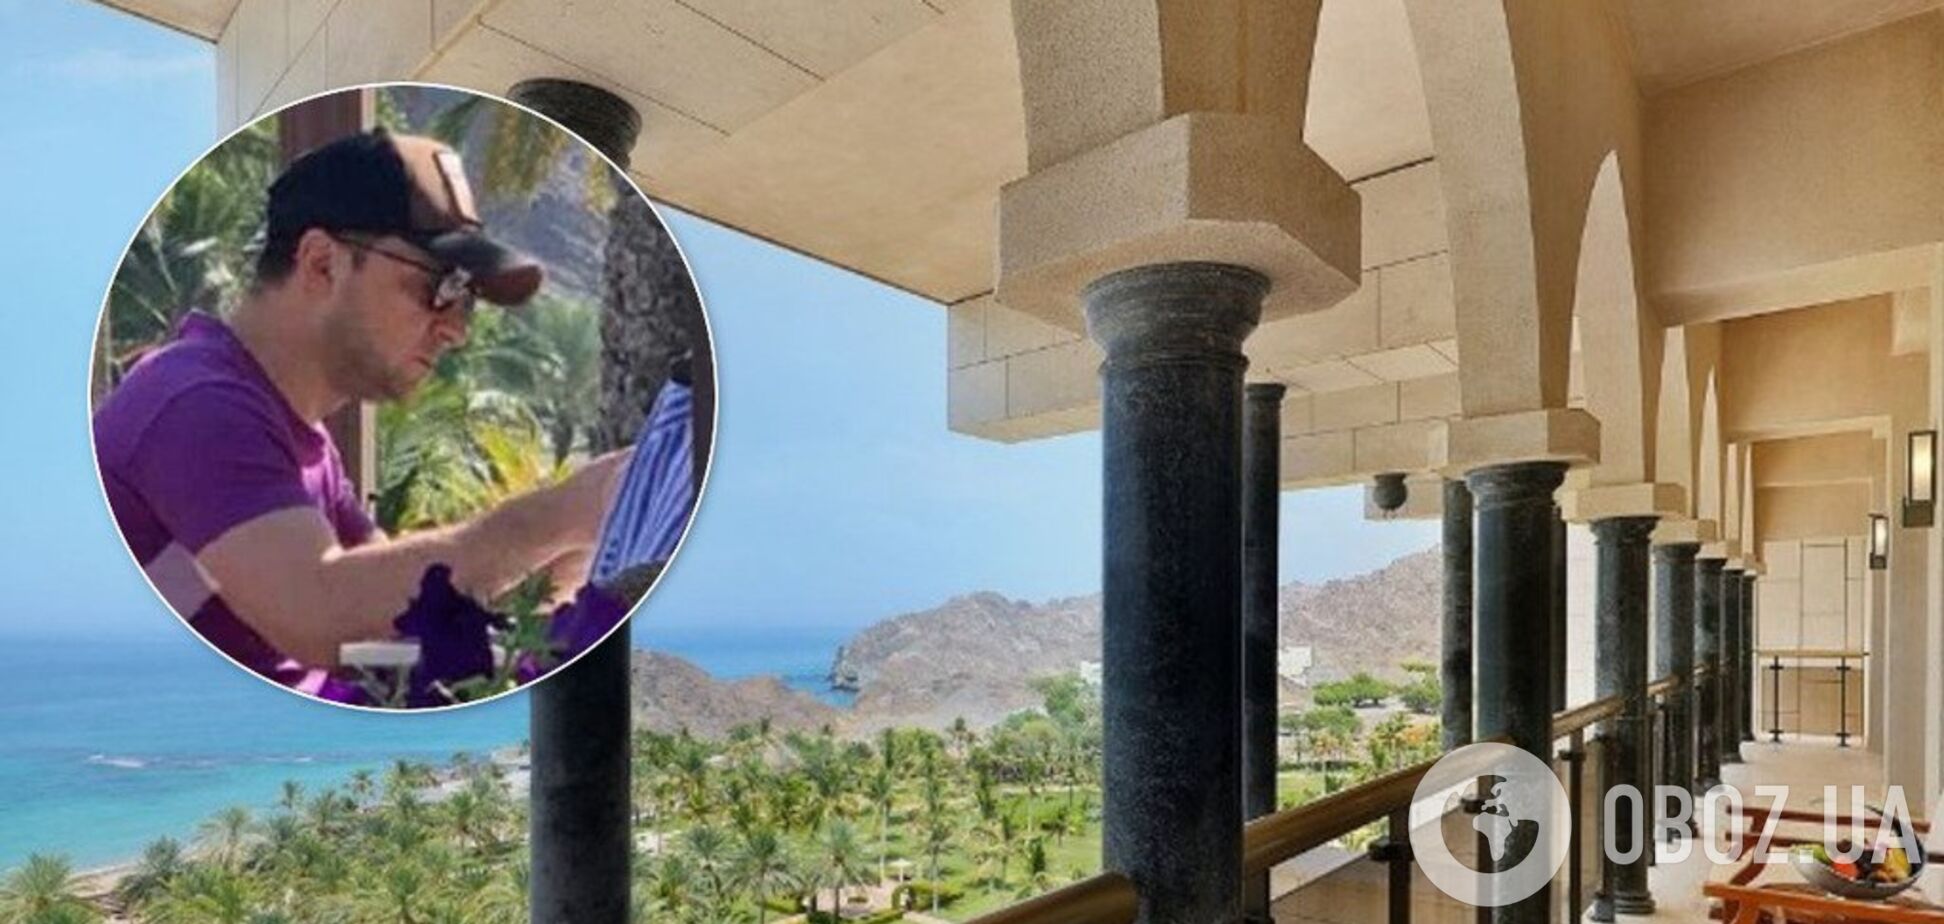 Люкс за 135 тисяч: опубліковано відео шикарних апартаментів Зеленського в Омані